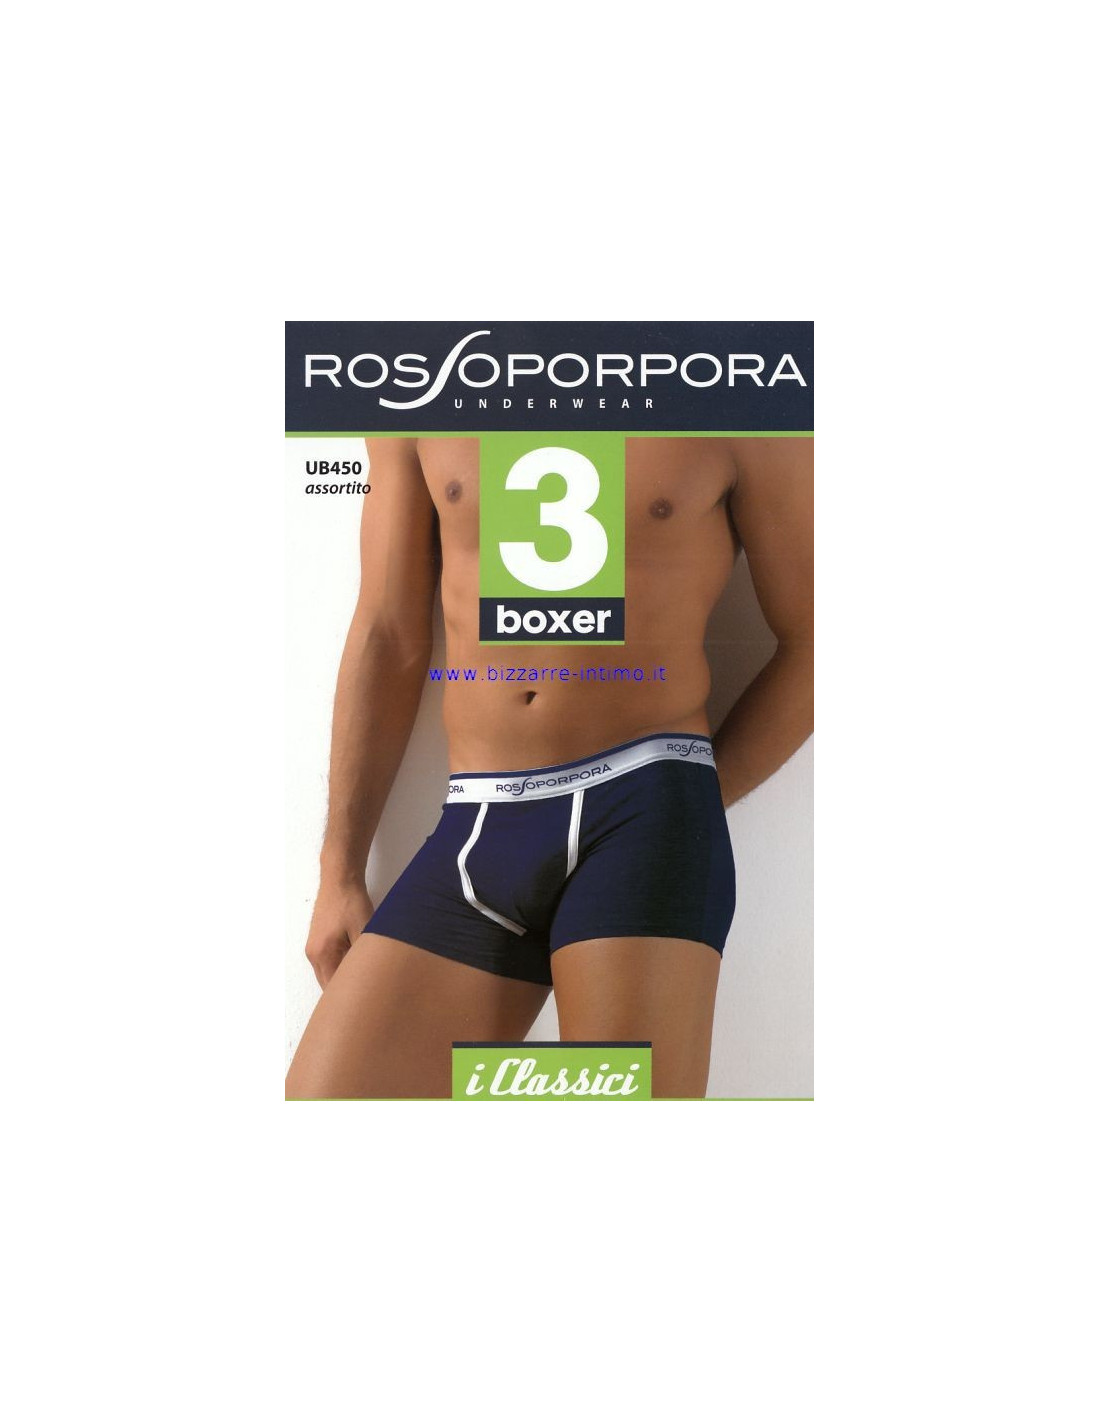 3 boxer Rosso Porpora UB450